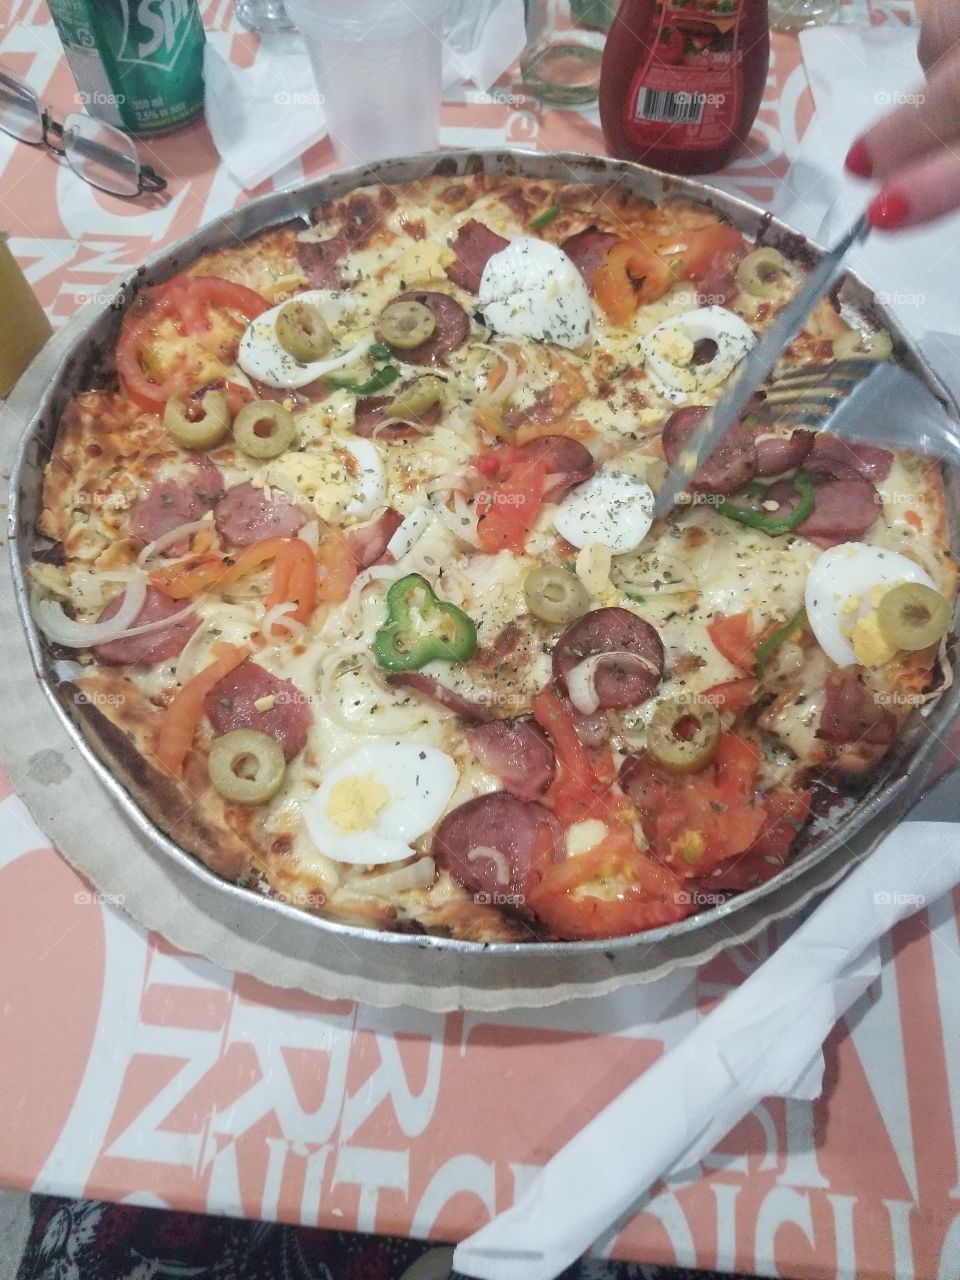 Pizza Portuguesa